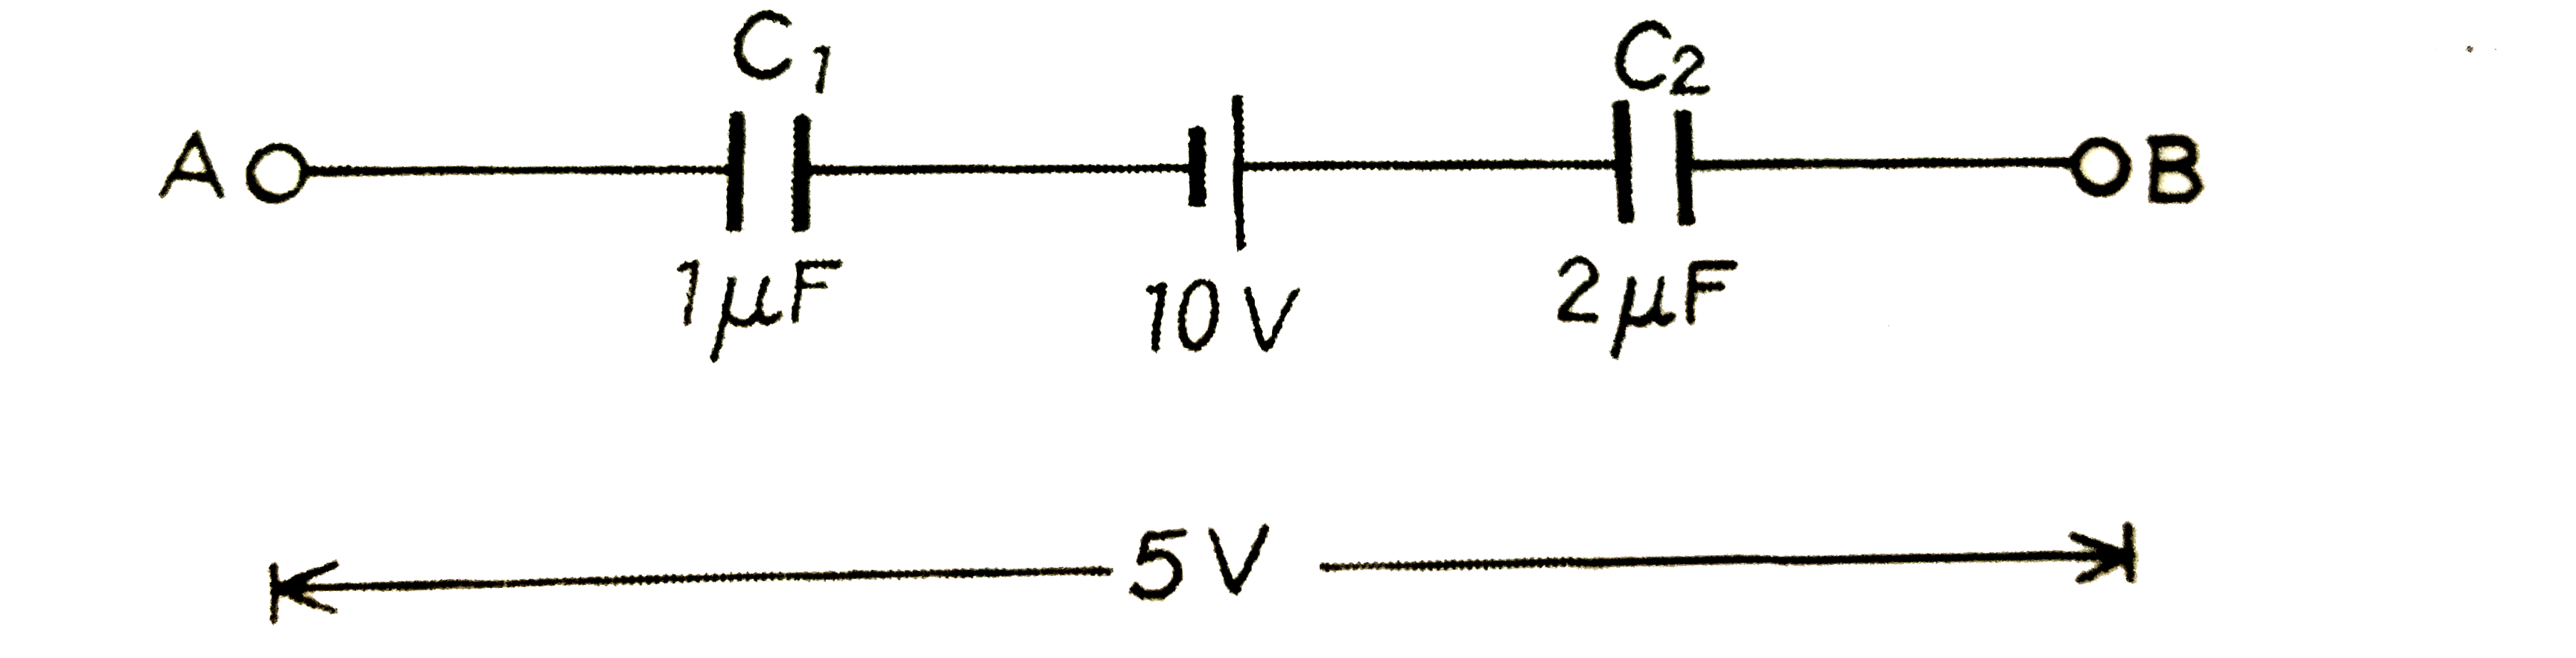 निम्न चित्र में प्रदर्शित परिपथ में बैटरी का विधुत वाहक बल 10 वोल्ट, संधारित्र C(1) की धारिता 1 muF,  संधारित्र C(2) की धारिता 2 muF तथा बिंदुओं A ओर B के बीच विभवान्तर V(A) - V(B) = 5 वोल्ट है । प्रत्येक संधारित्र का विभवान्तर ज्ञात कीजिए ।